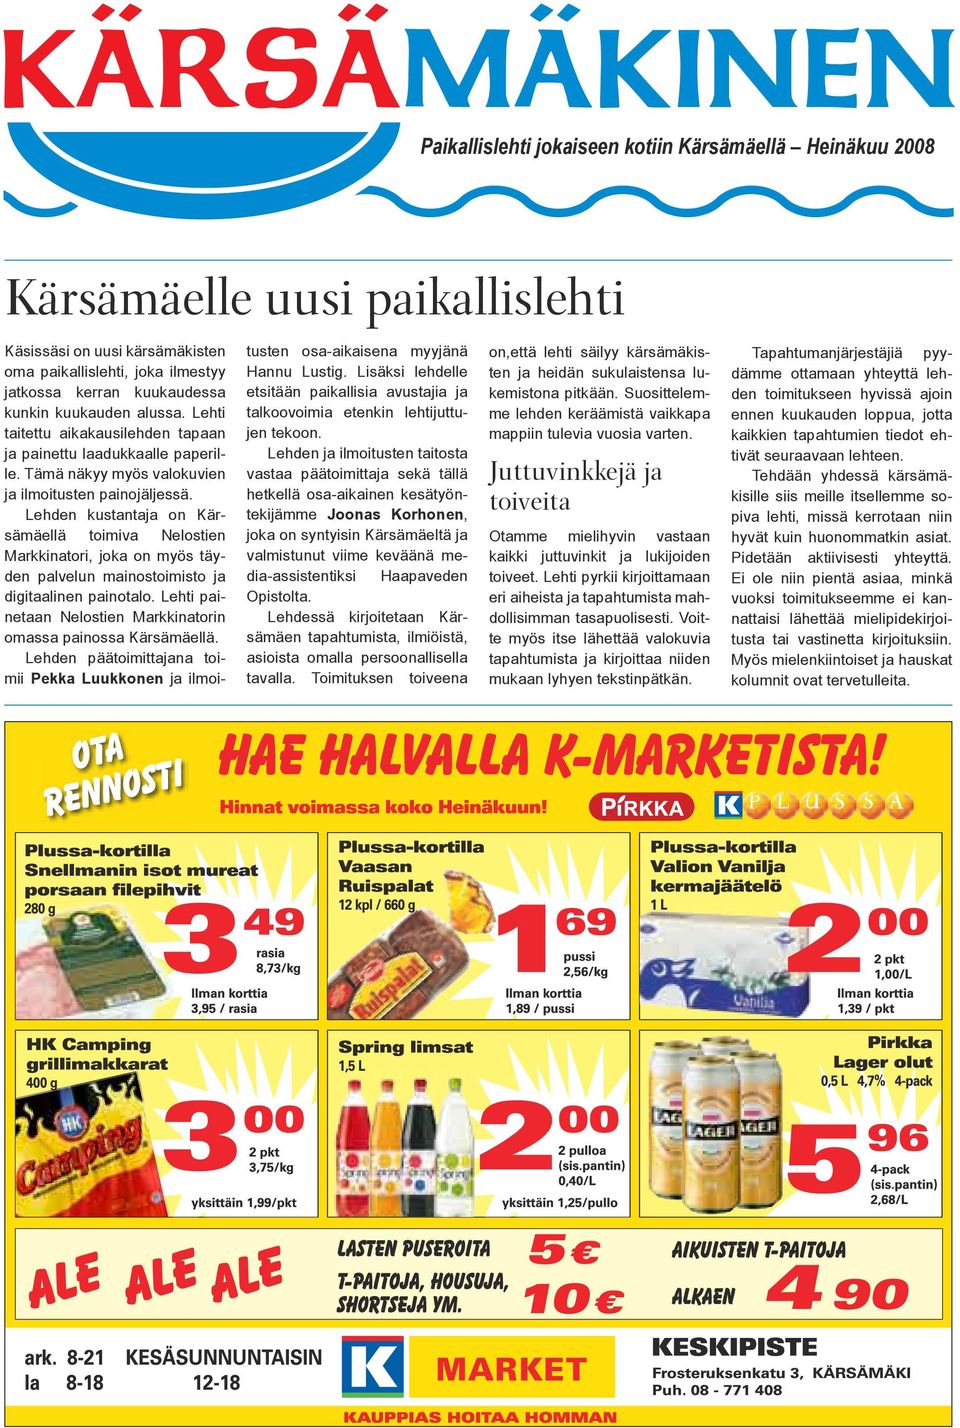 Lehden kustantaja on Kärsämäellä toimiva Nelostien Markkinatori, joka on myös täyden palvelun mainostoimisto ja digitaalinen painotalo.